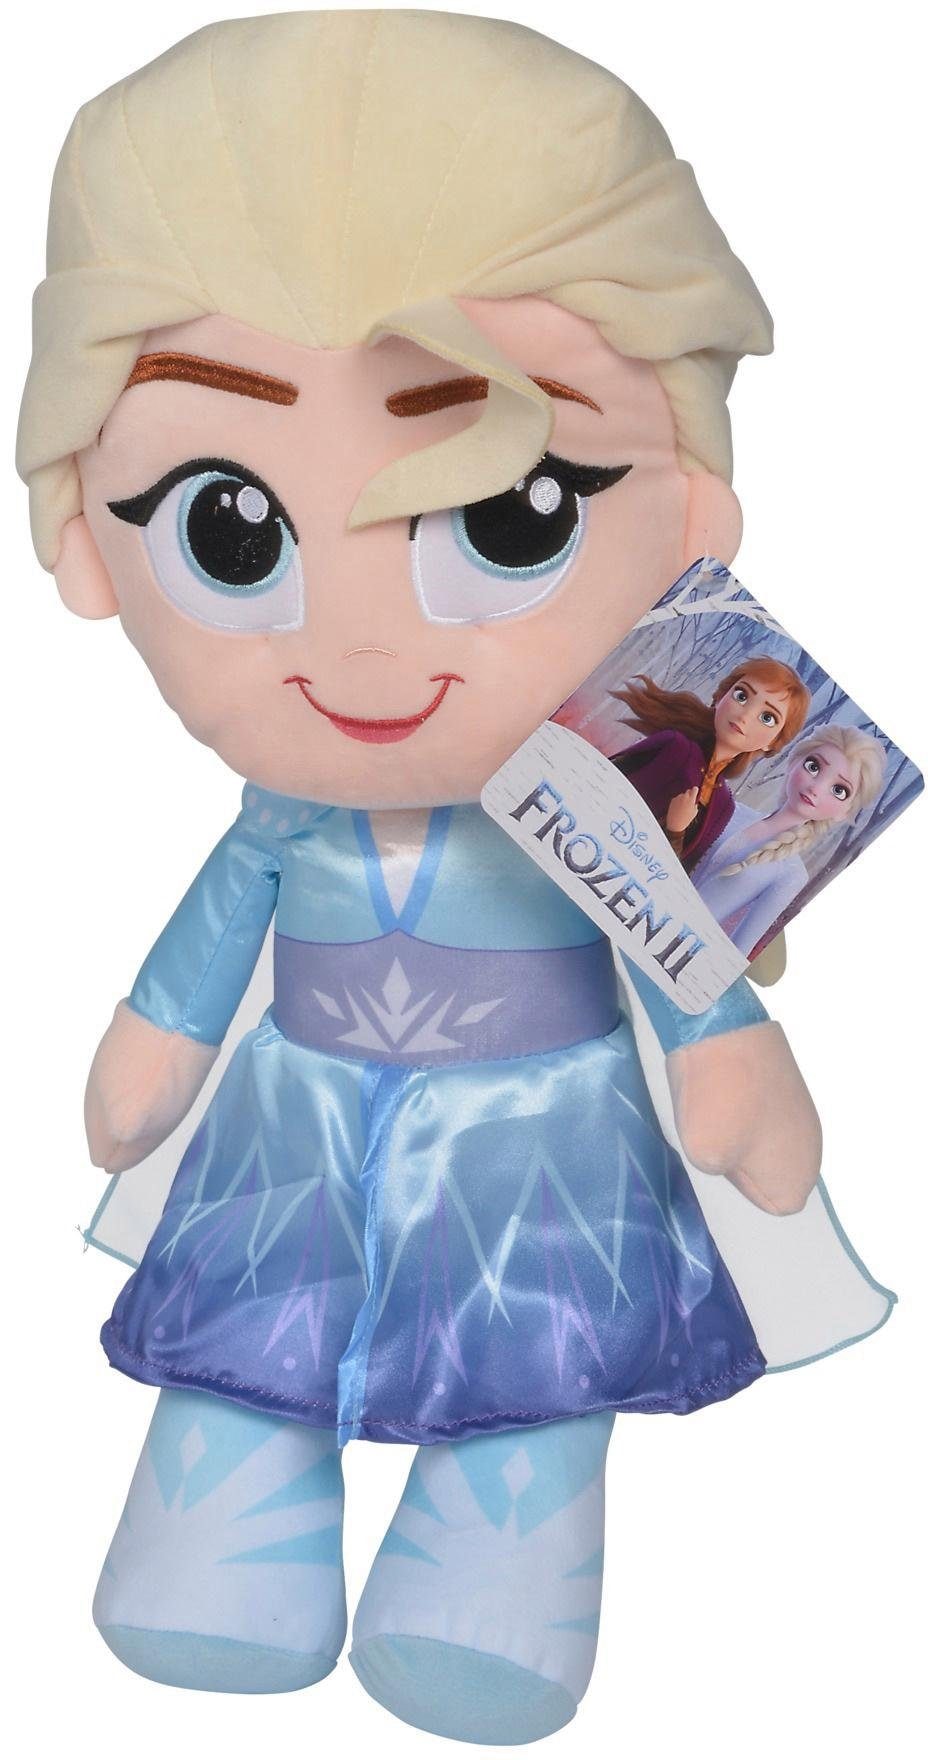 SIMBA Plüschfigur »Disney Frozen 2, Elsa, 43 cm« online kaufen | OTTO